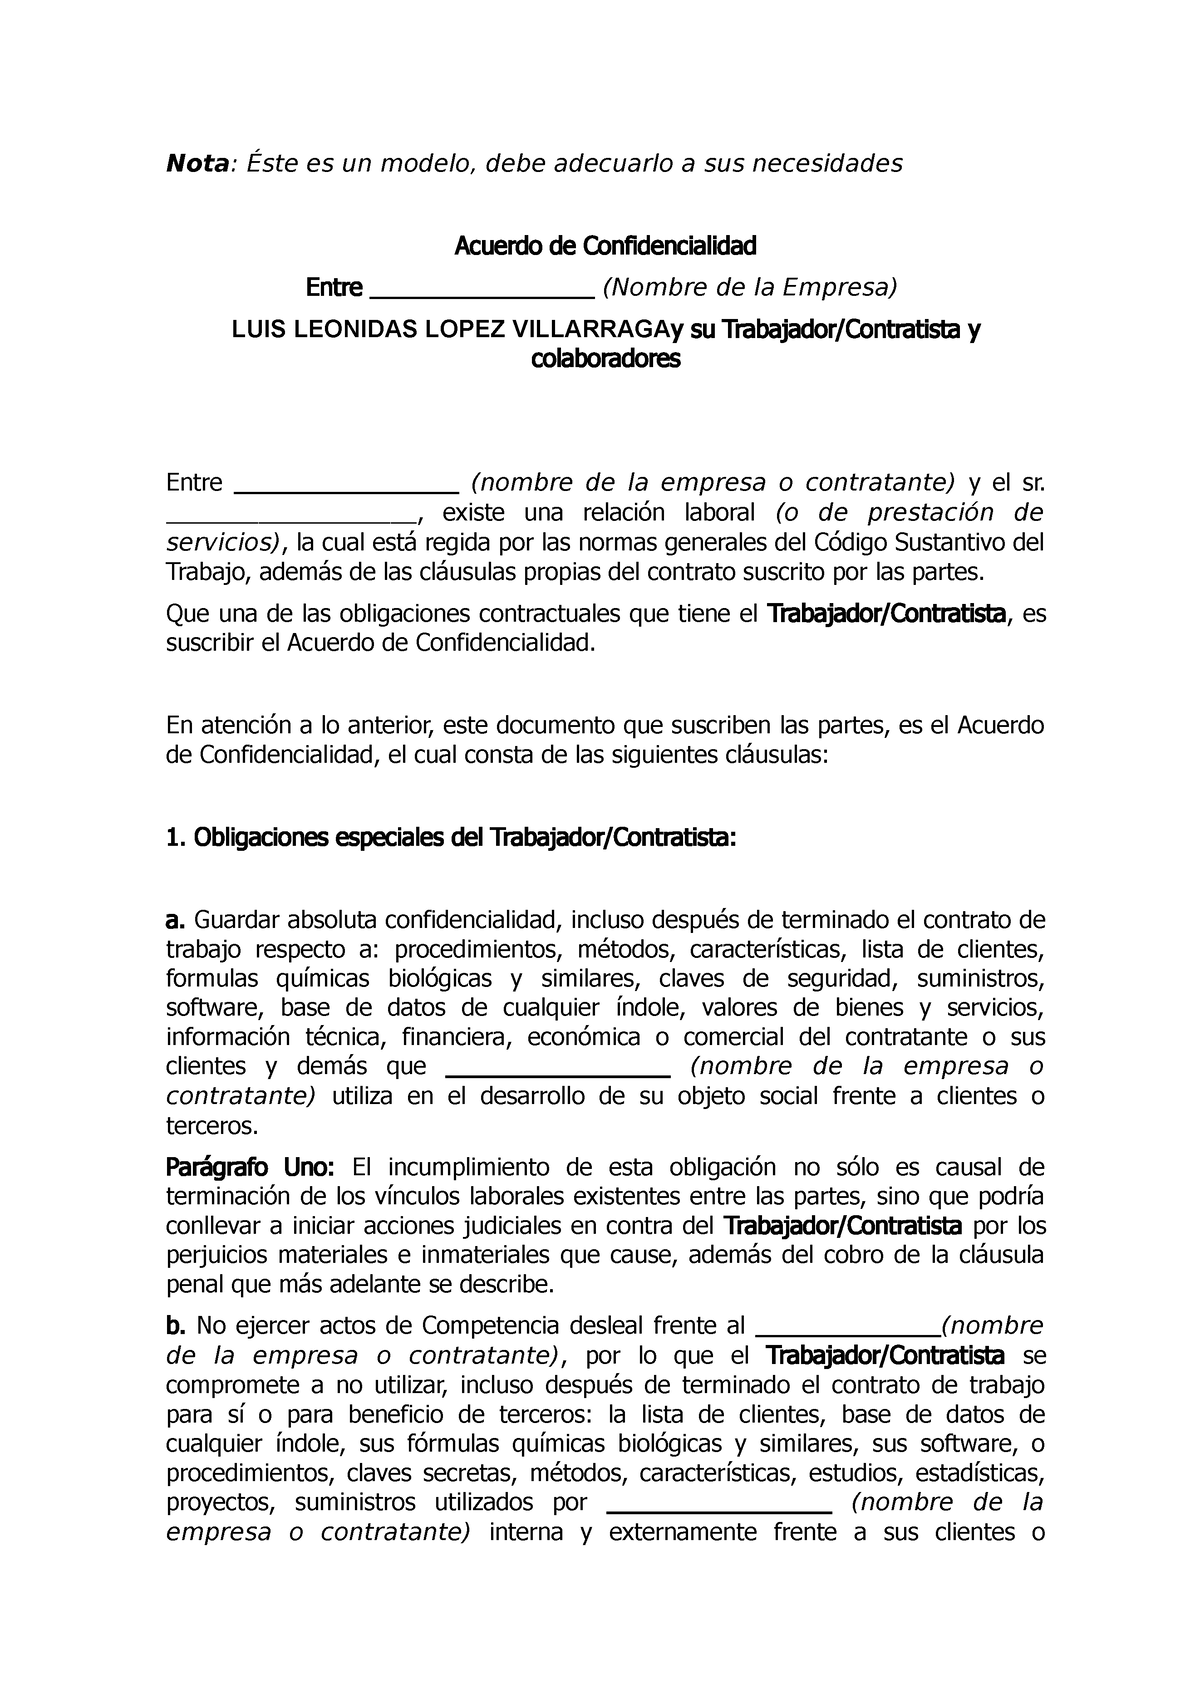 Acuerdo de confidencialidad trabajadores y contratistas - Nota : Éste es un  modelo, debe adecuarlo a - Studocu